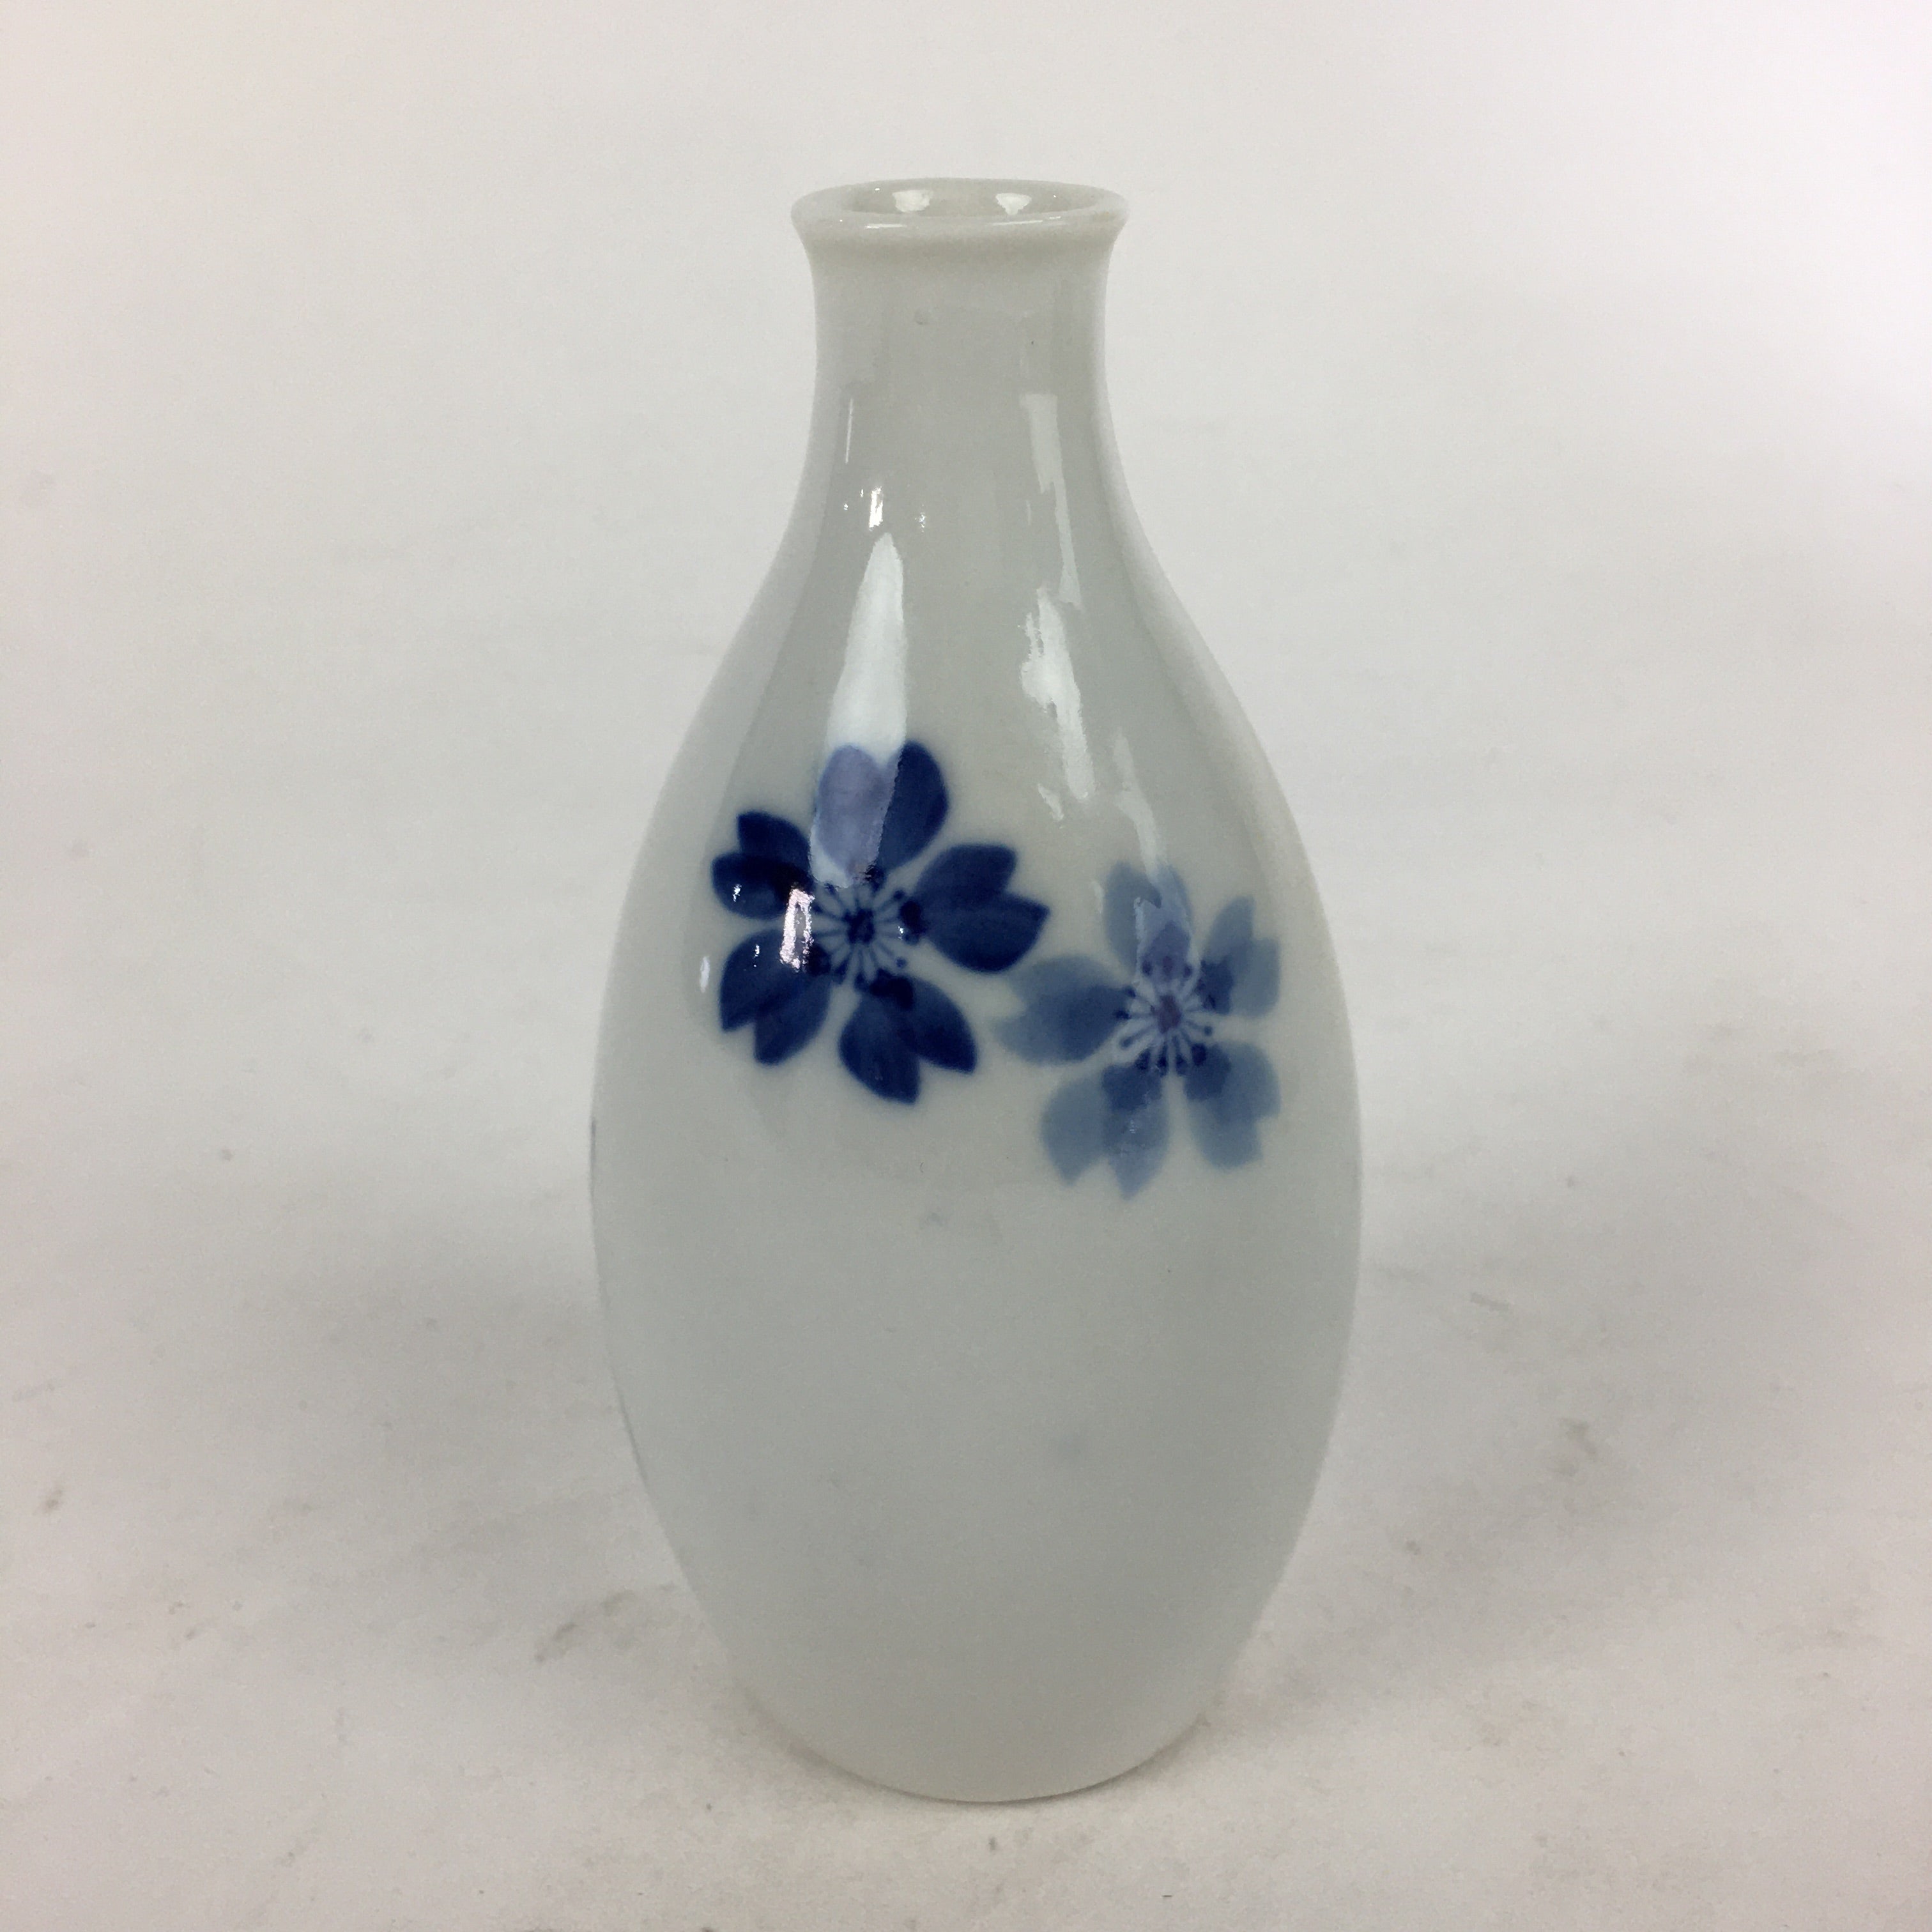 Japanese Porcelain Sake Bottle Vtg Cherry Blossom Design White Tokkuri TS346